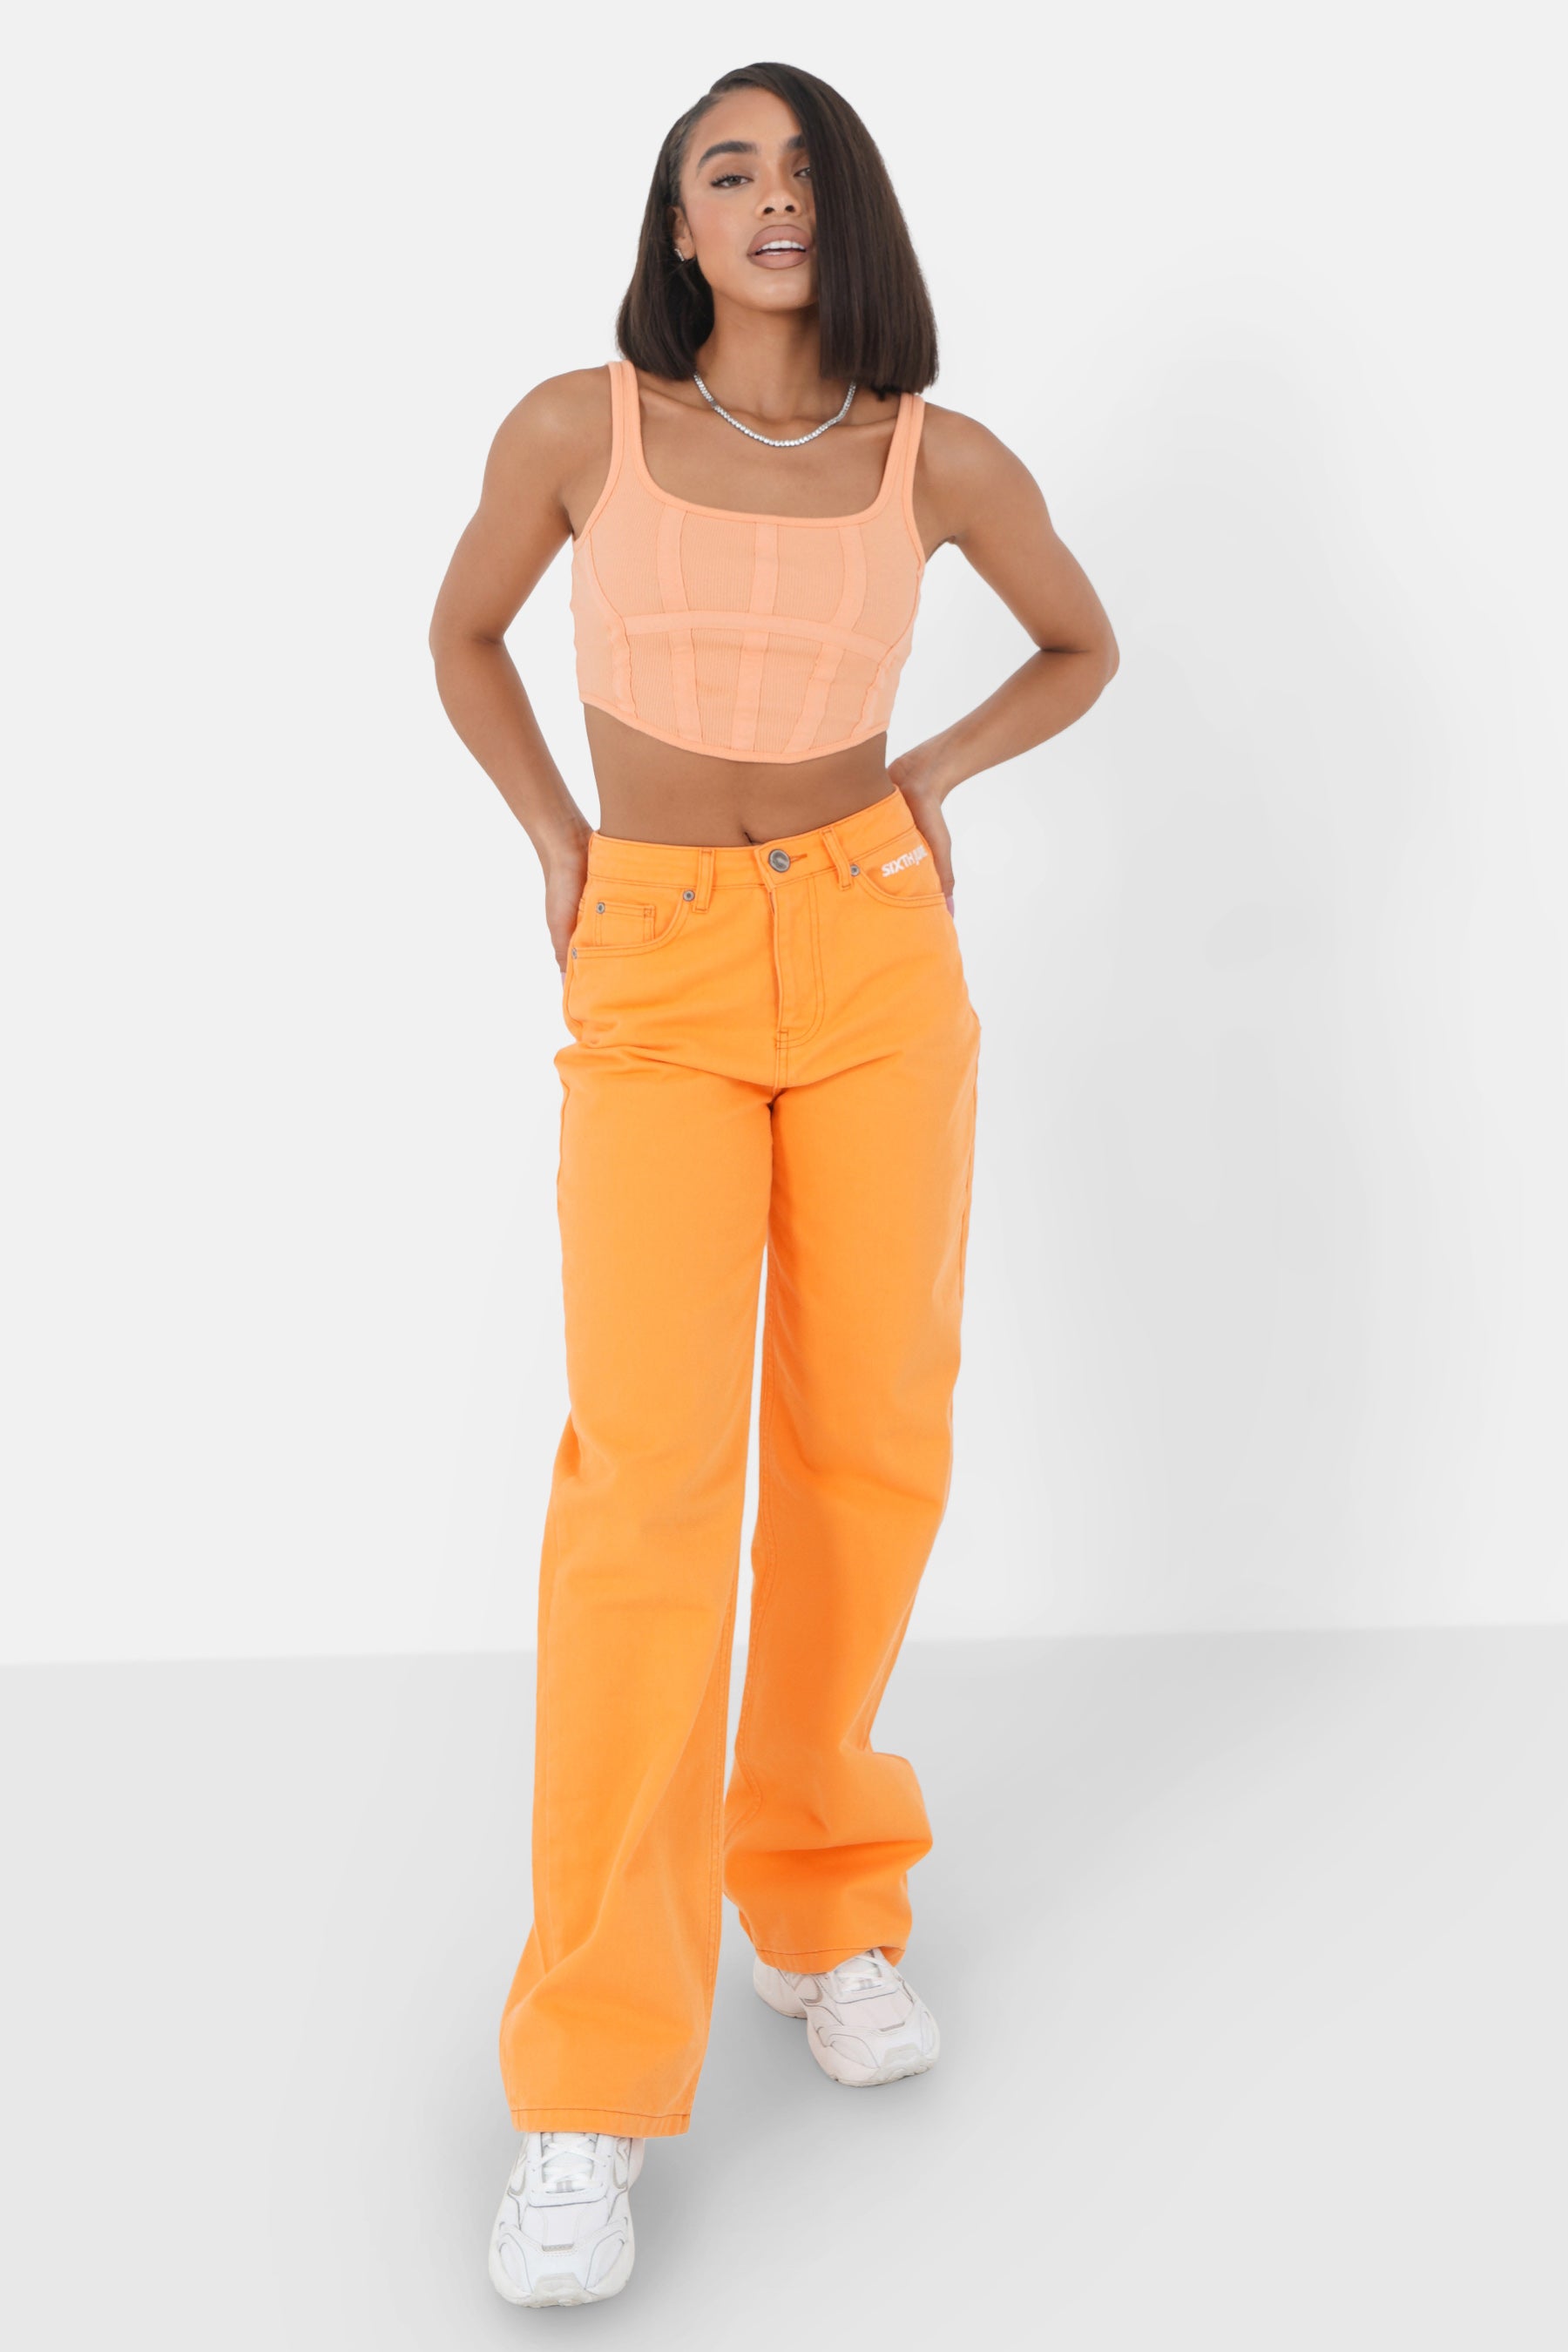 Short straps zip top Orange